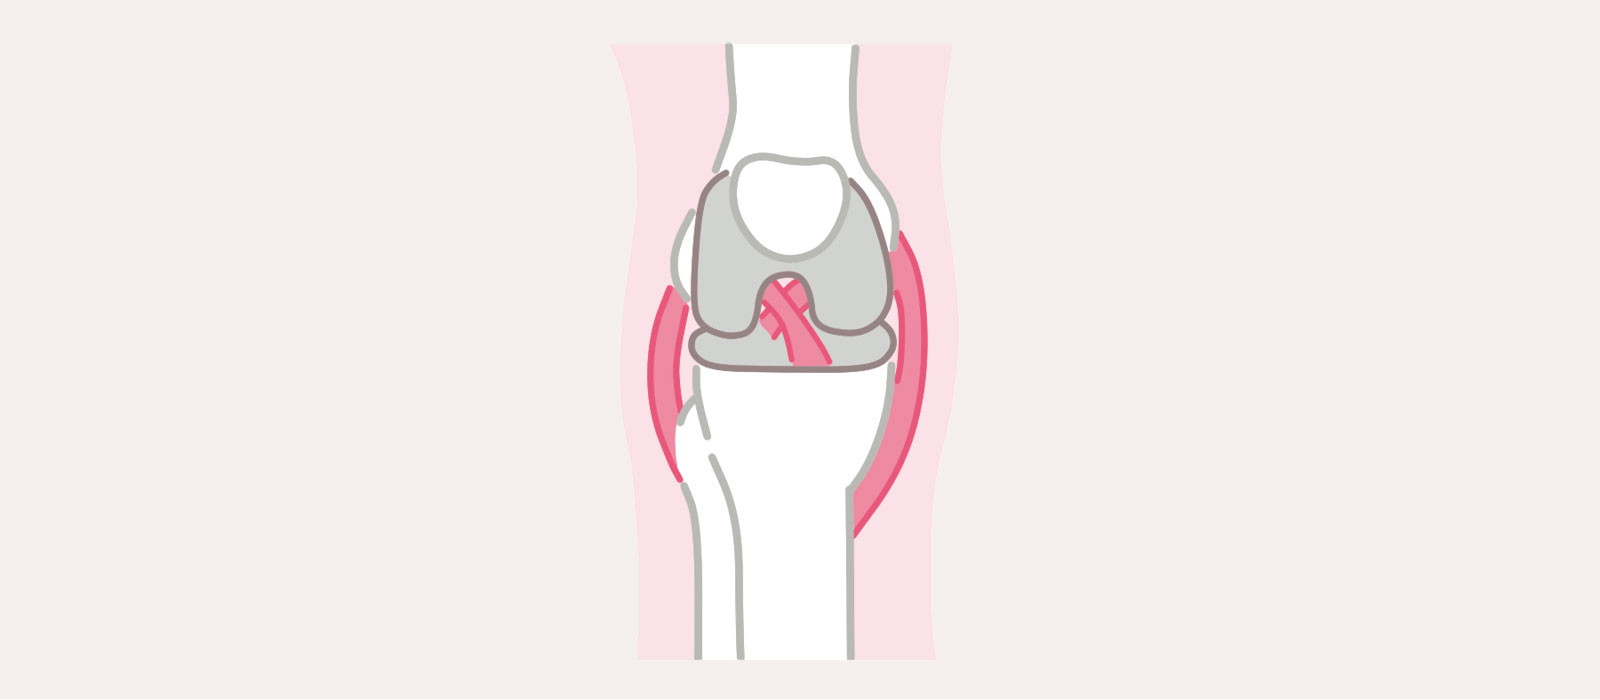 膝の障害 解説 膝関節を構成する3つの骨（大腿骨、脛骨、膝蓋骨）